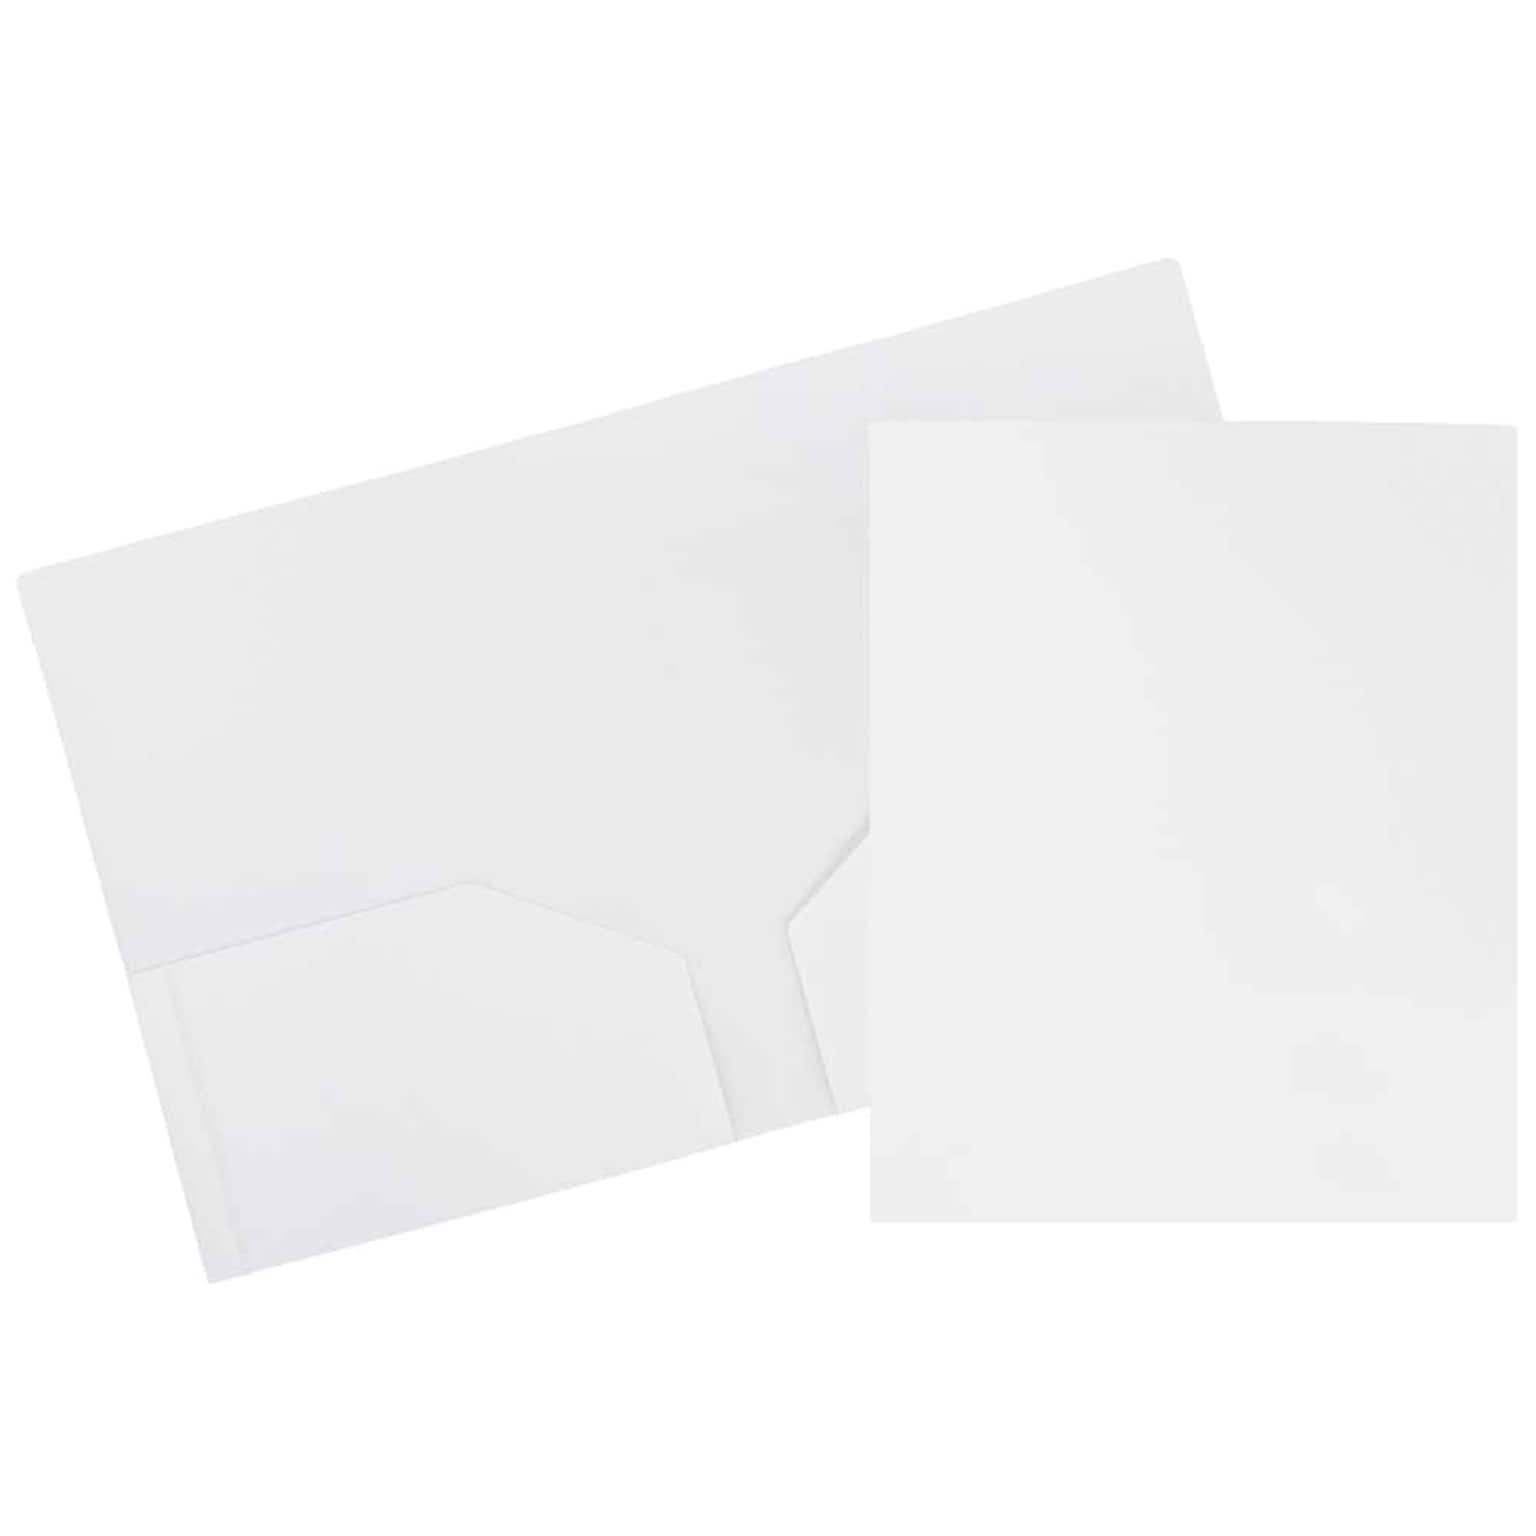 JAM Paper Heavy Duty Two-Pocket Plastic Folders, White, 6/Pack (57404D)